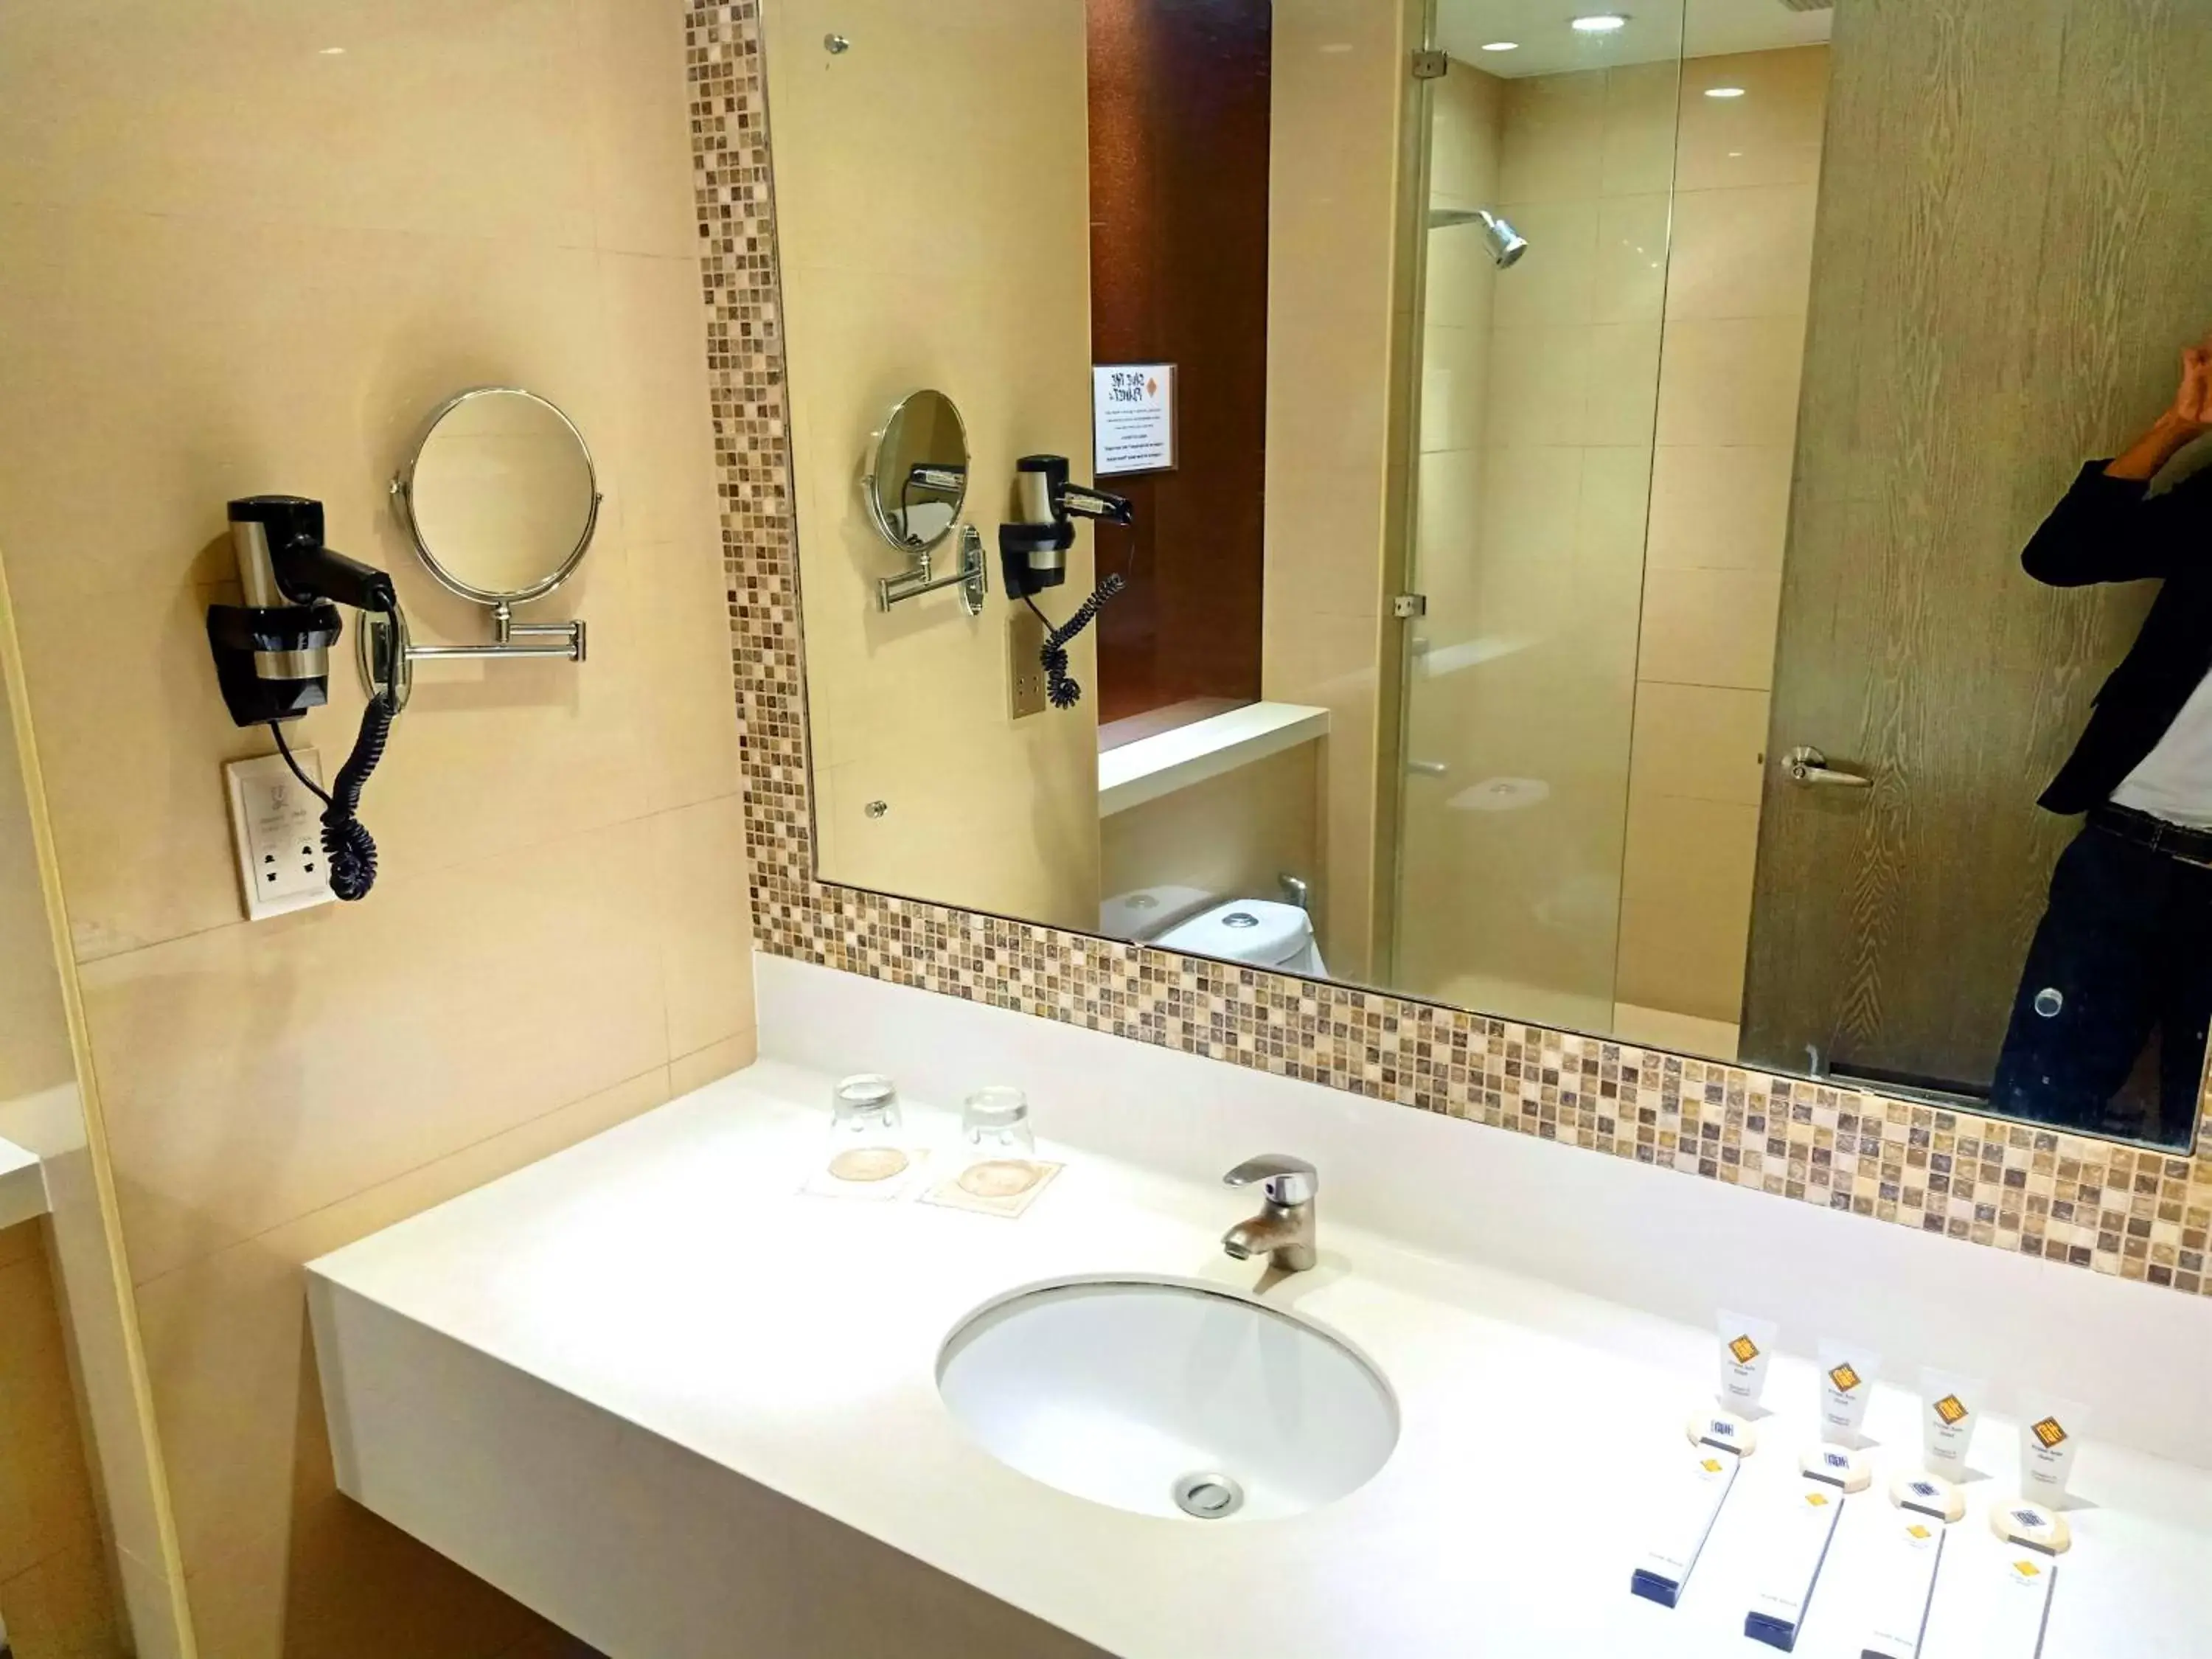 Bathroom in Prime Asia Hotel